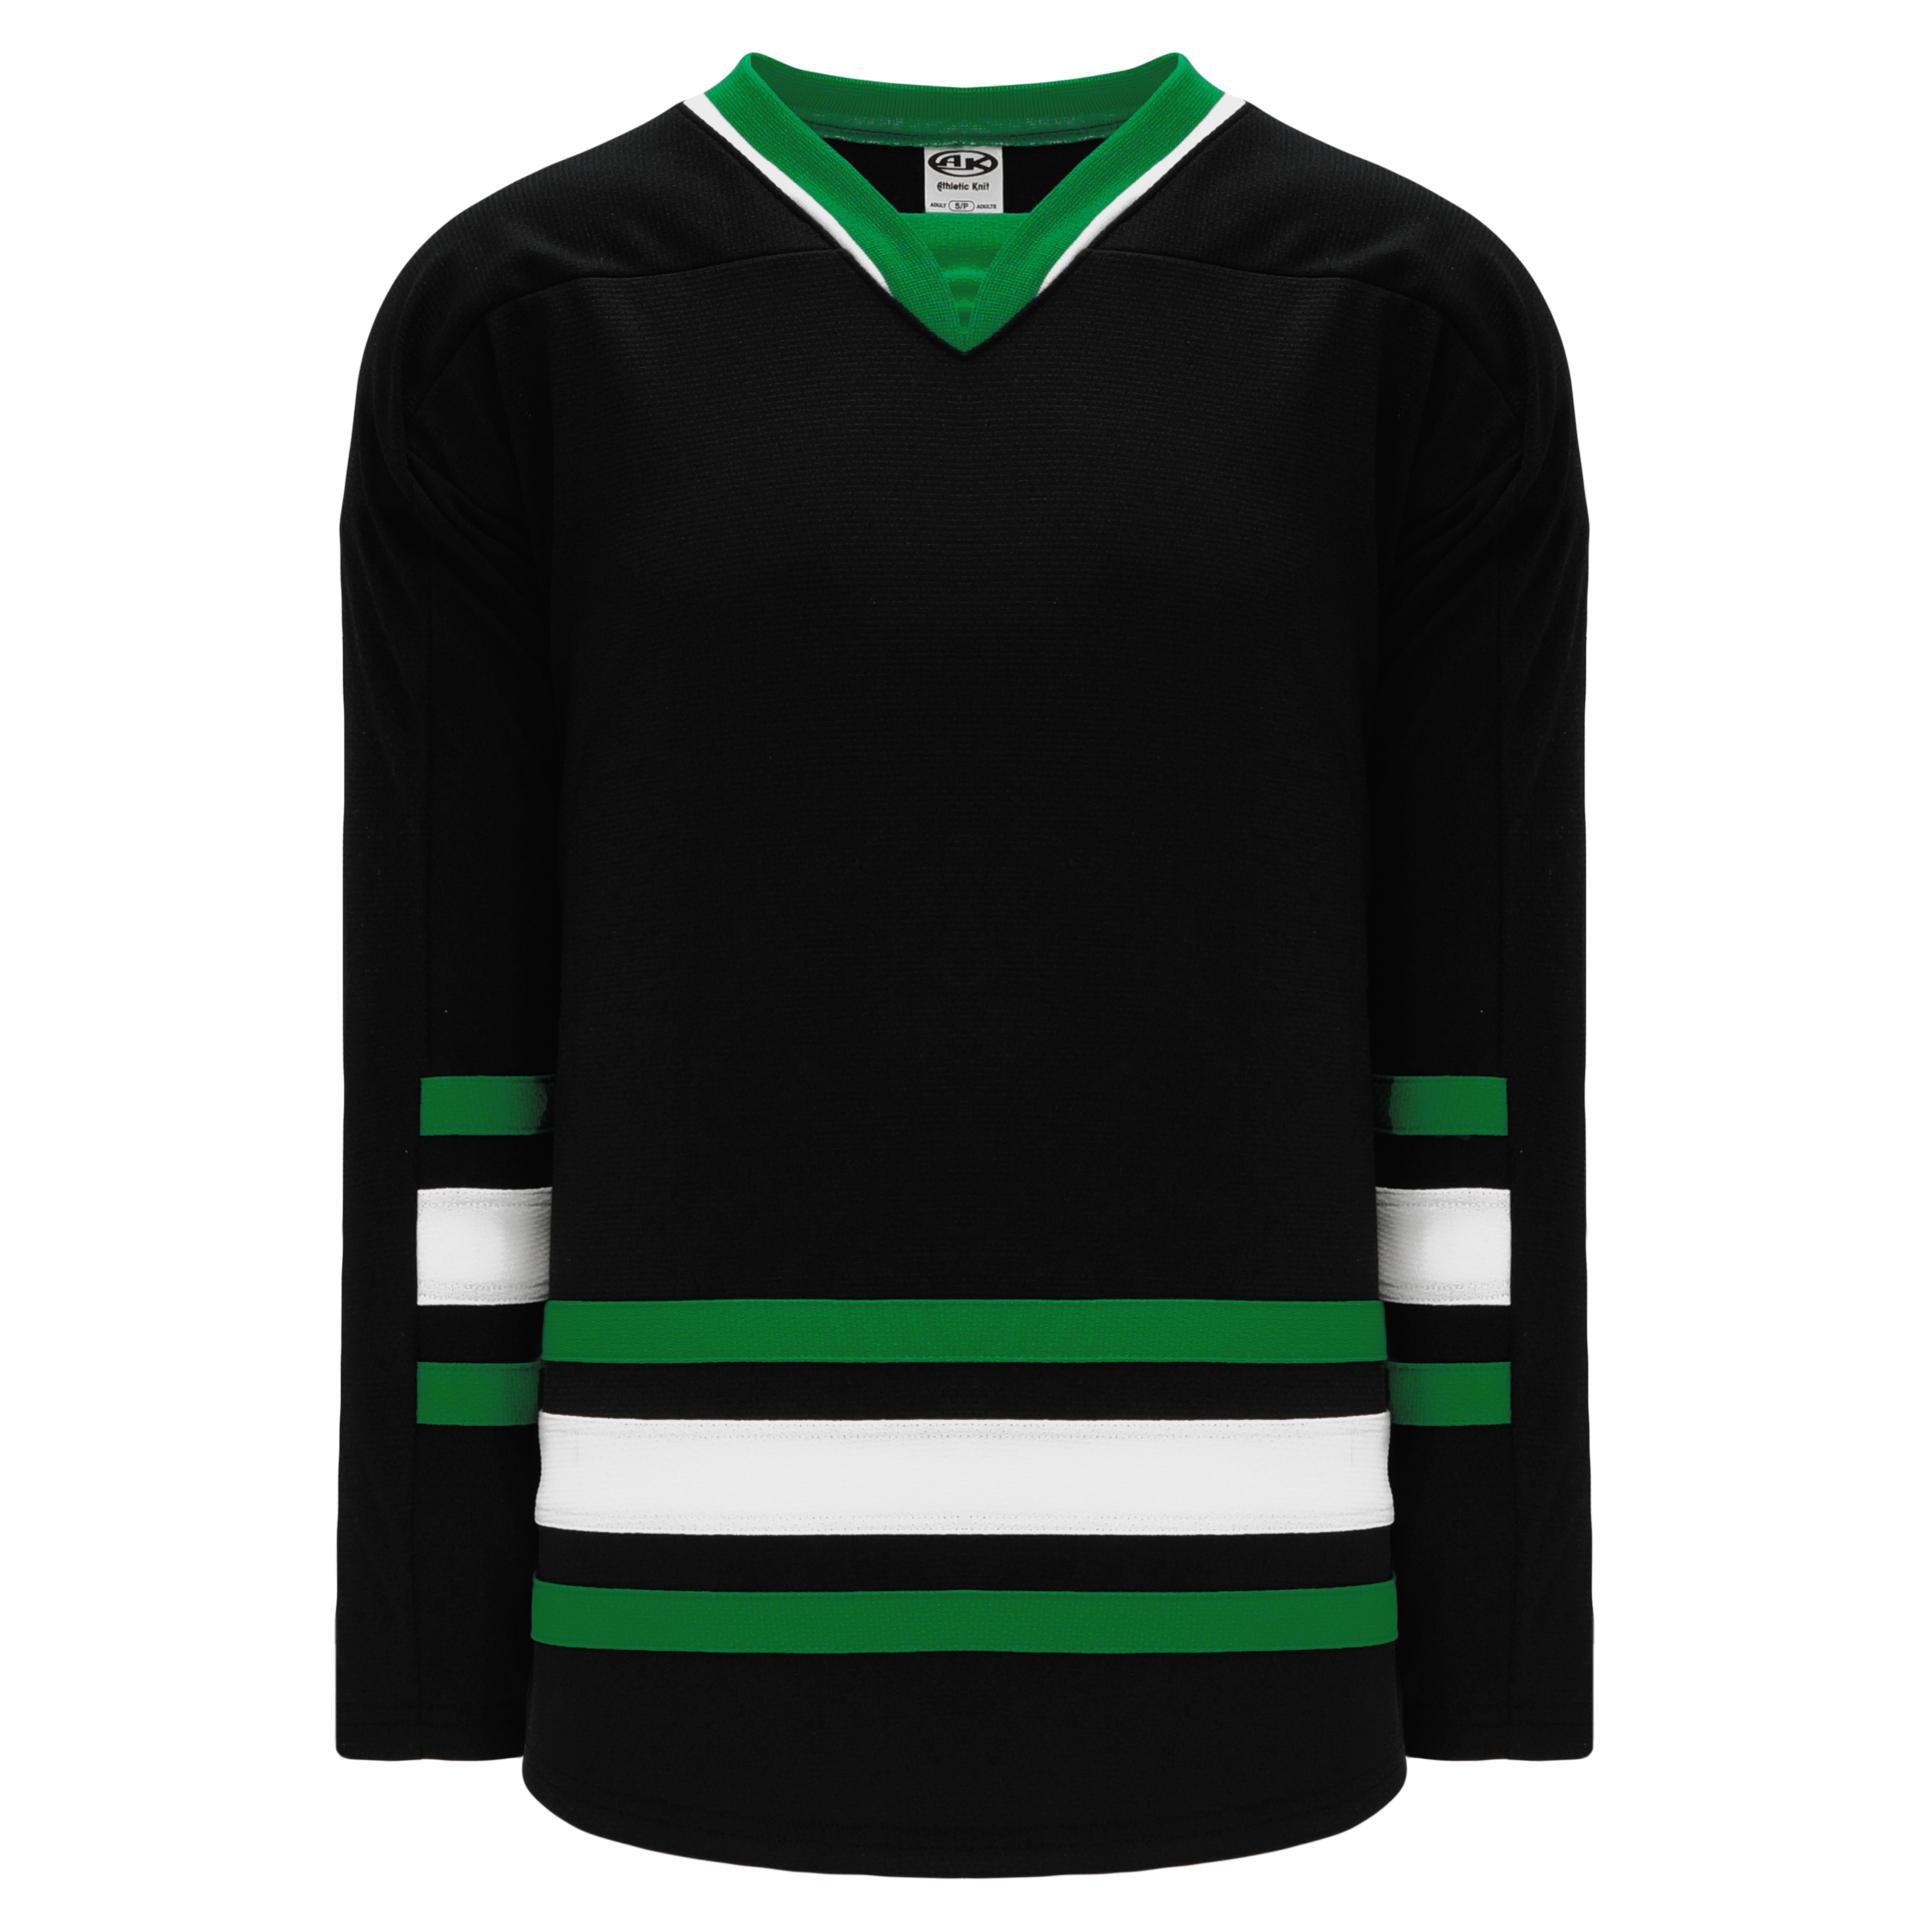 Blank Green Hockey Jersey  Hockey jersey, Custom hockey jerseys